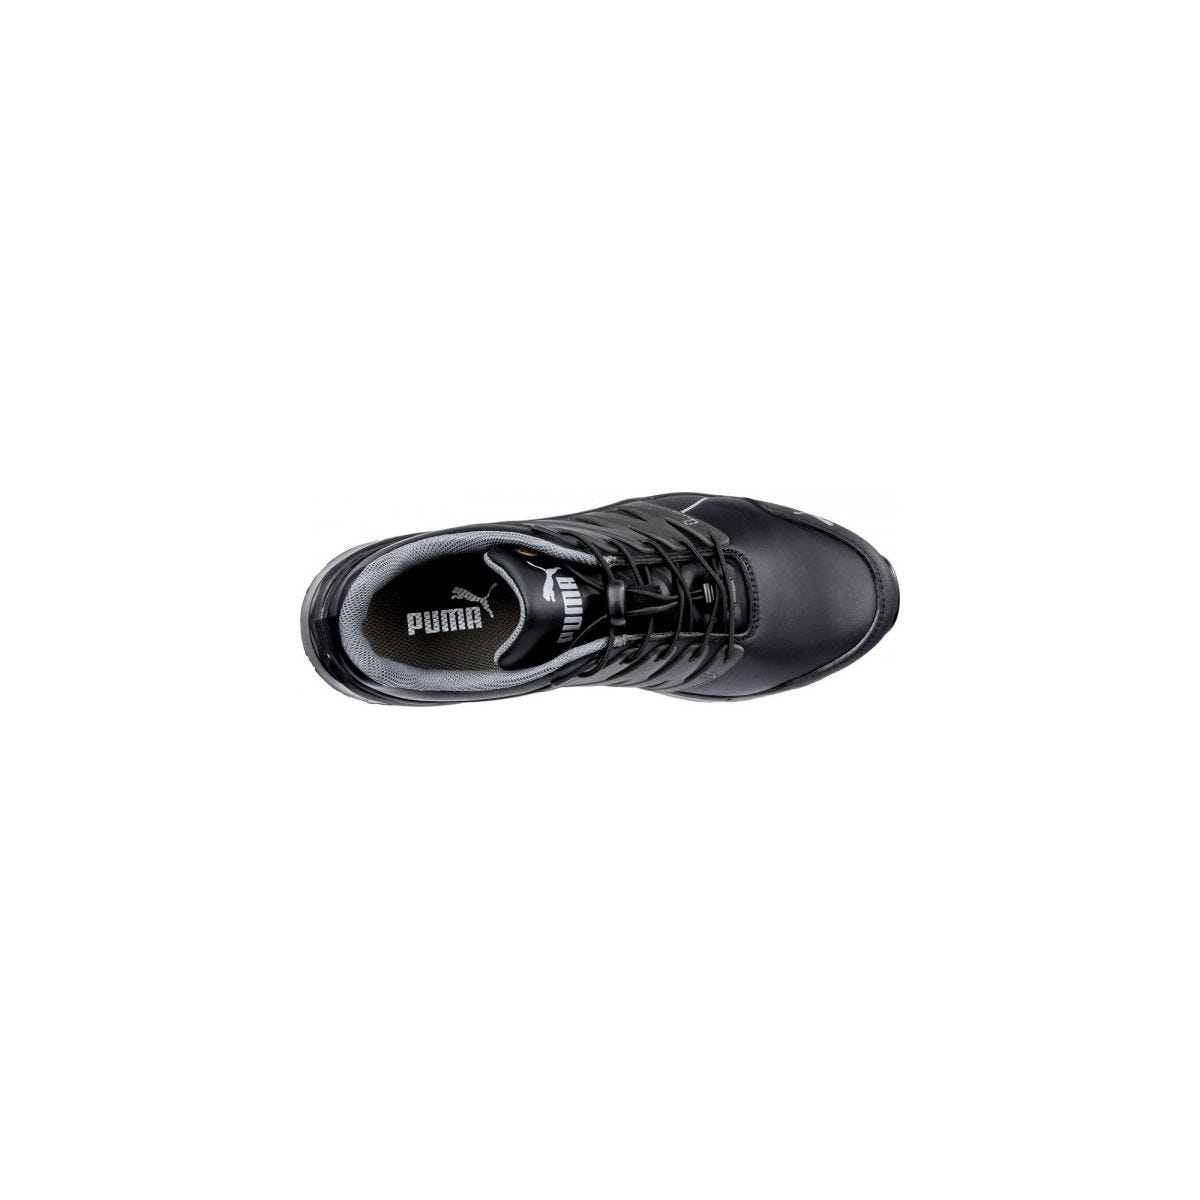 Chaussures de sécurité Velocity 2.0 Noir Low S3 - Puma - Taille 36 3